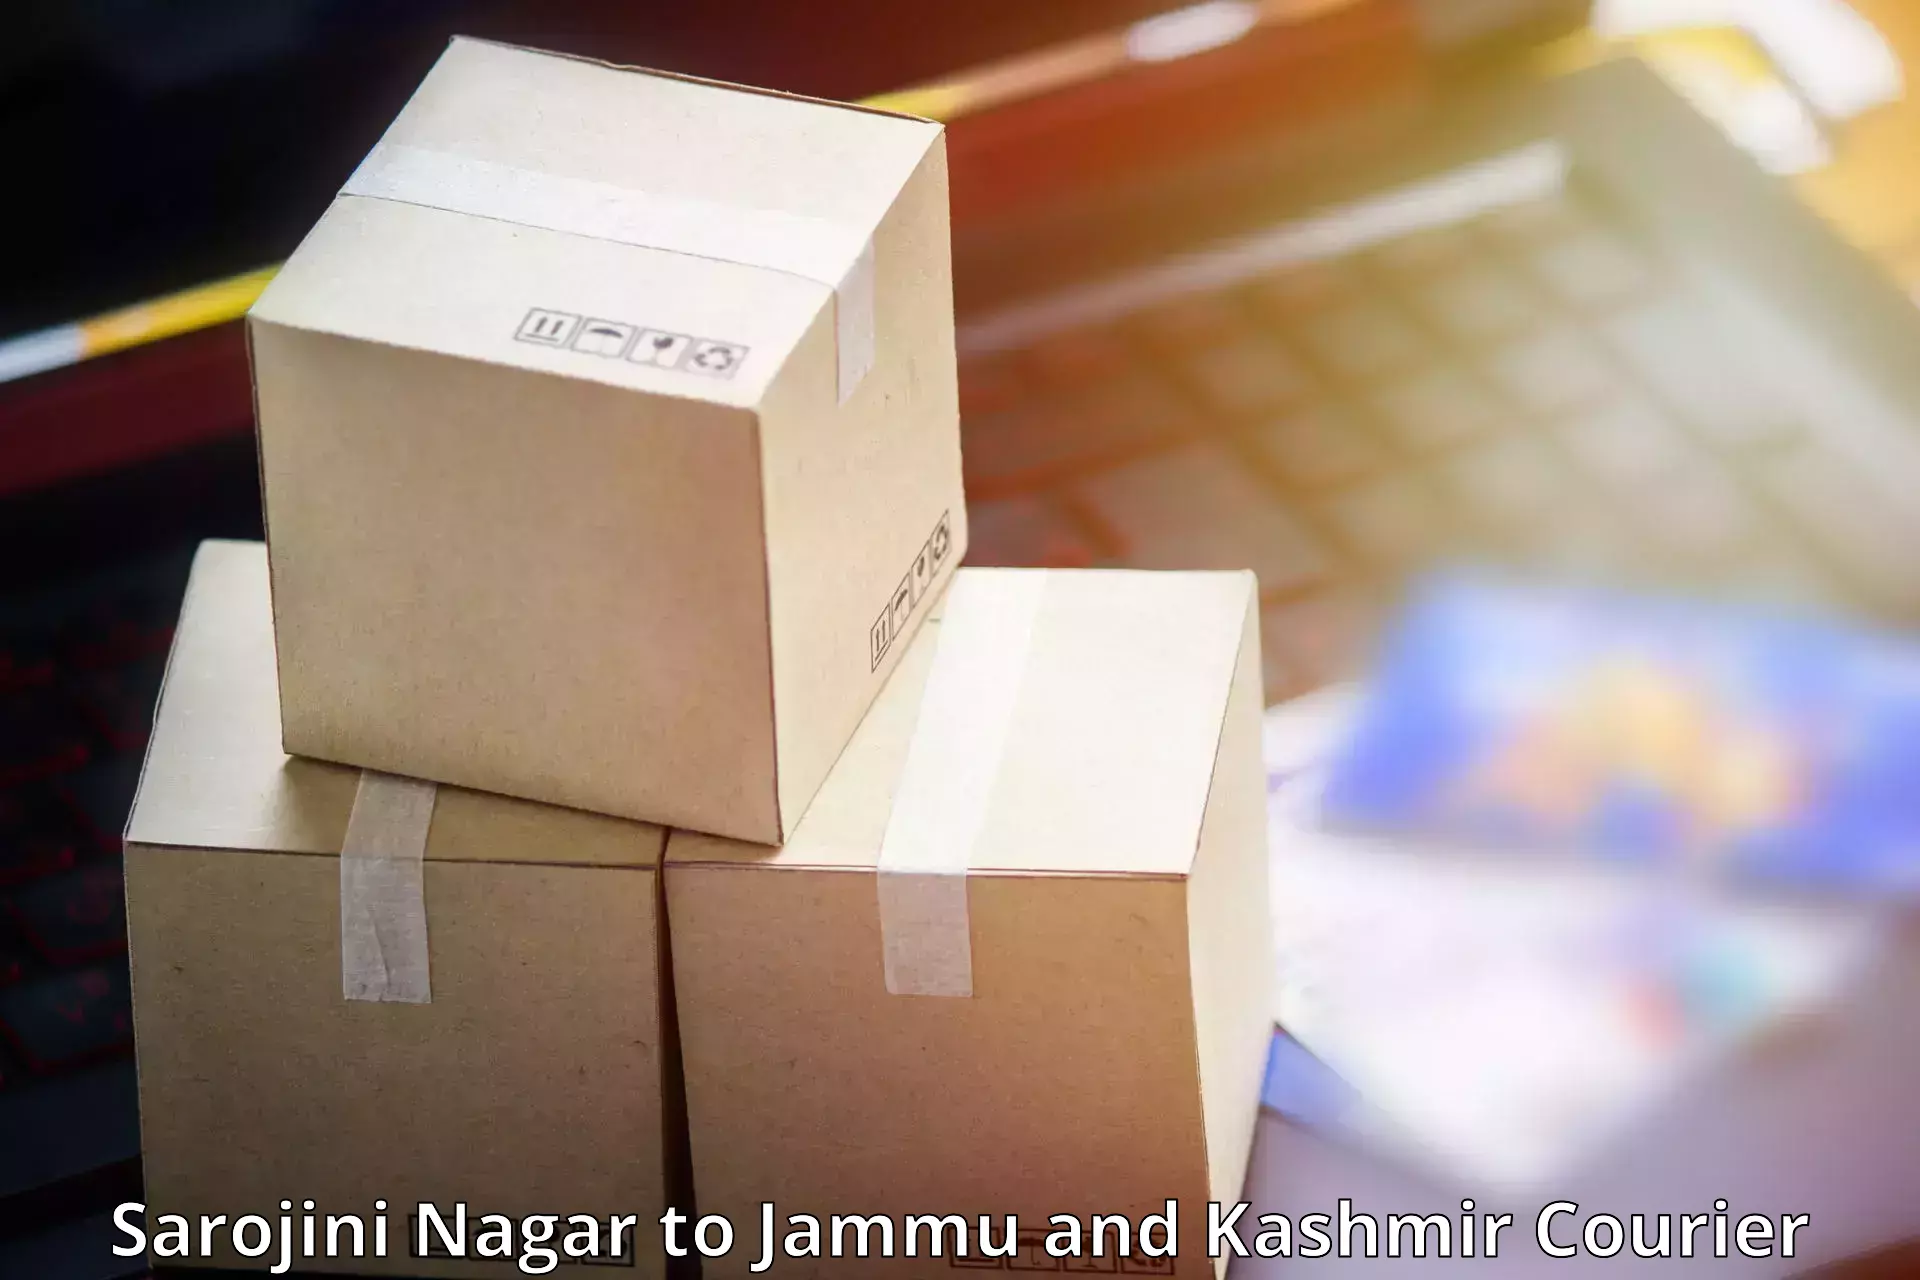 Nationwide delivery network Sarojini Nagar to Akhnoor